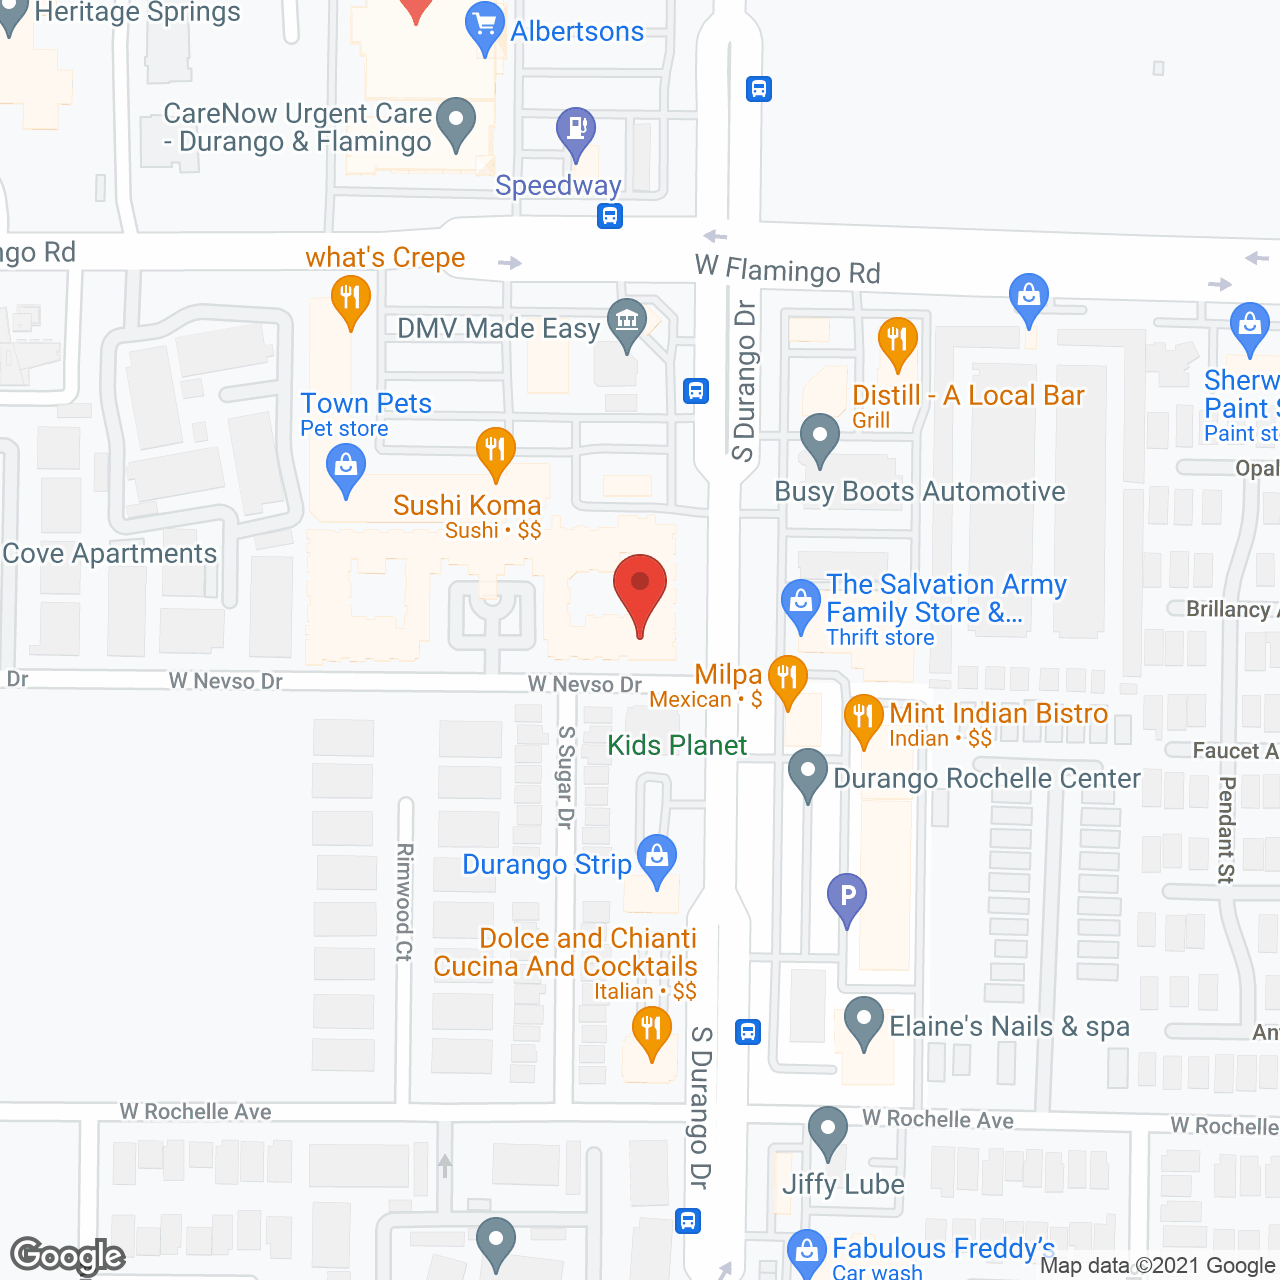 Acacia Springs in google map